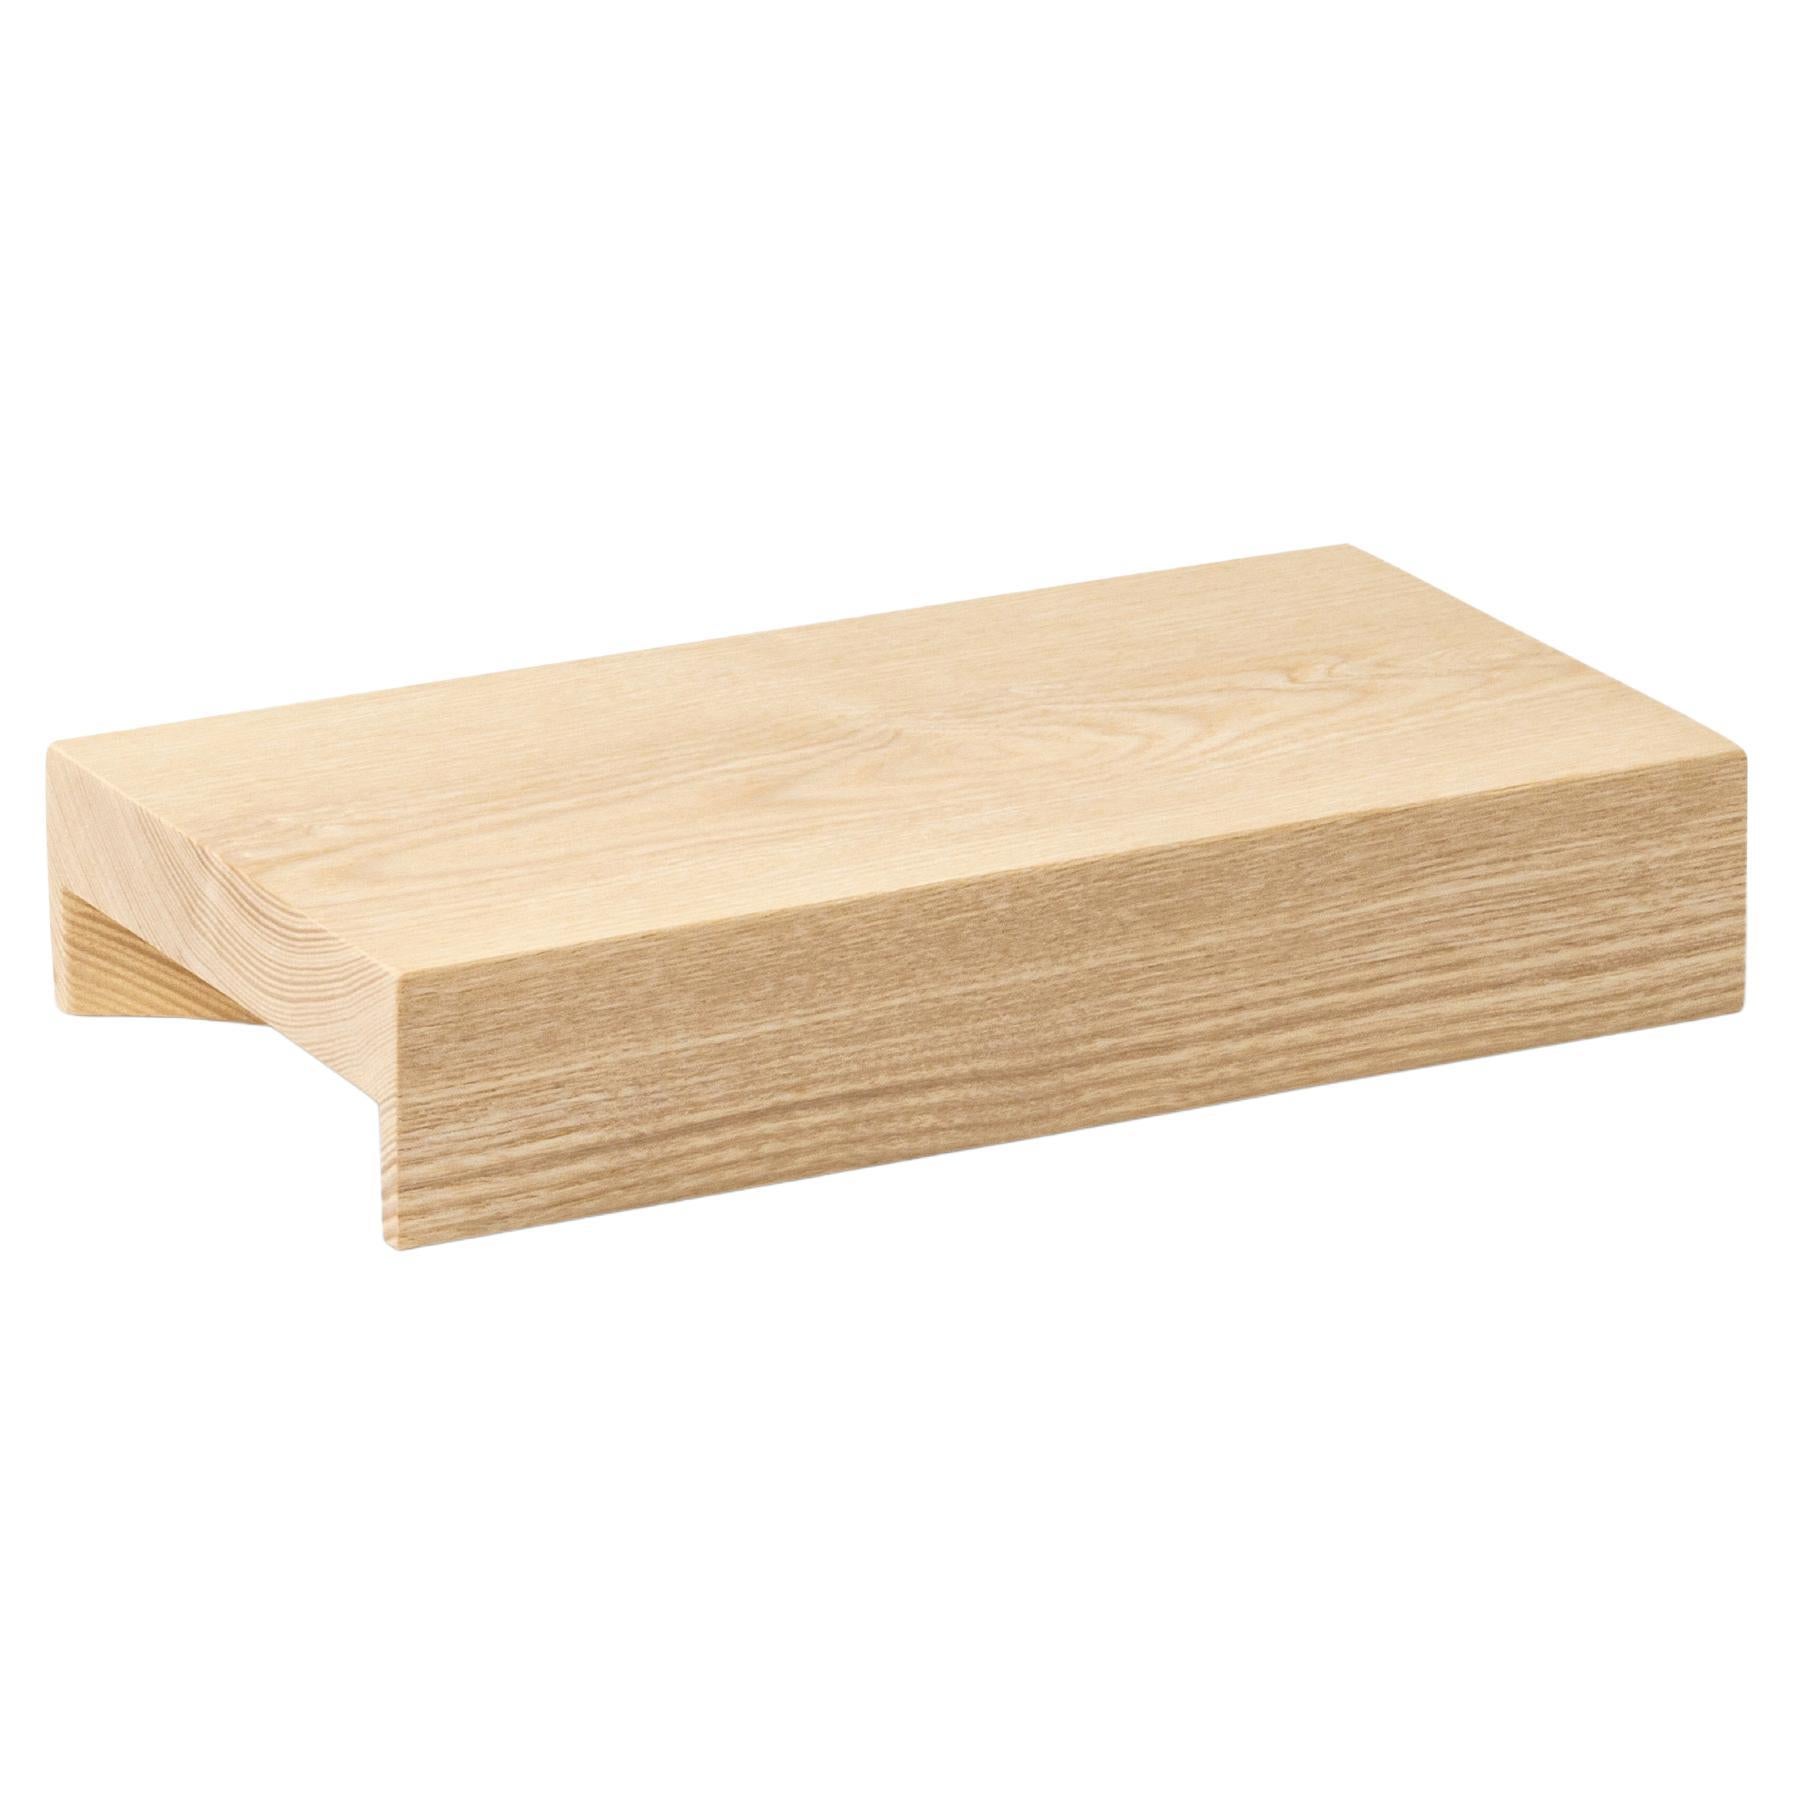 Minimalist Wood Tray Medium For Sale